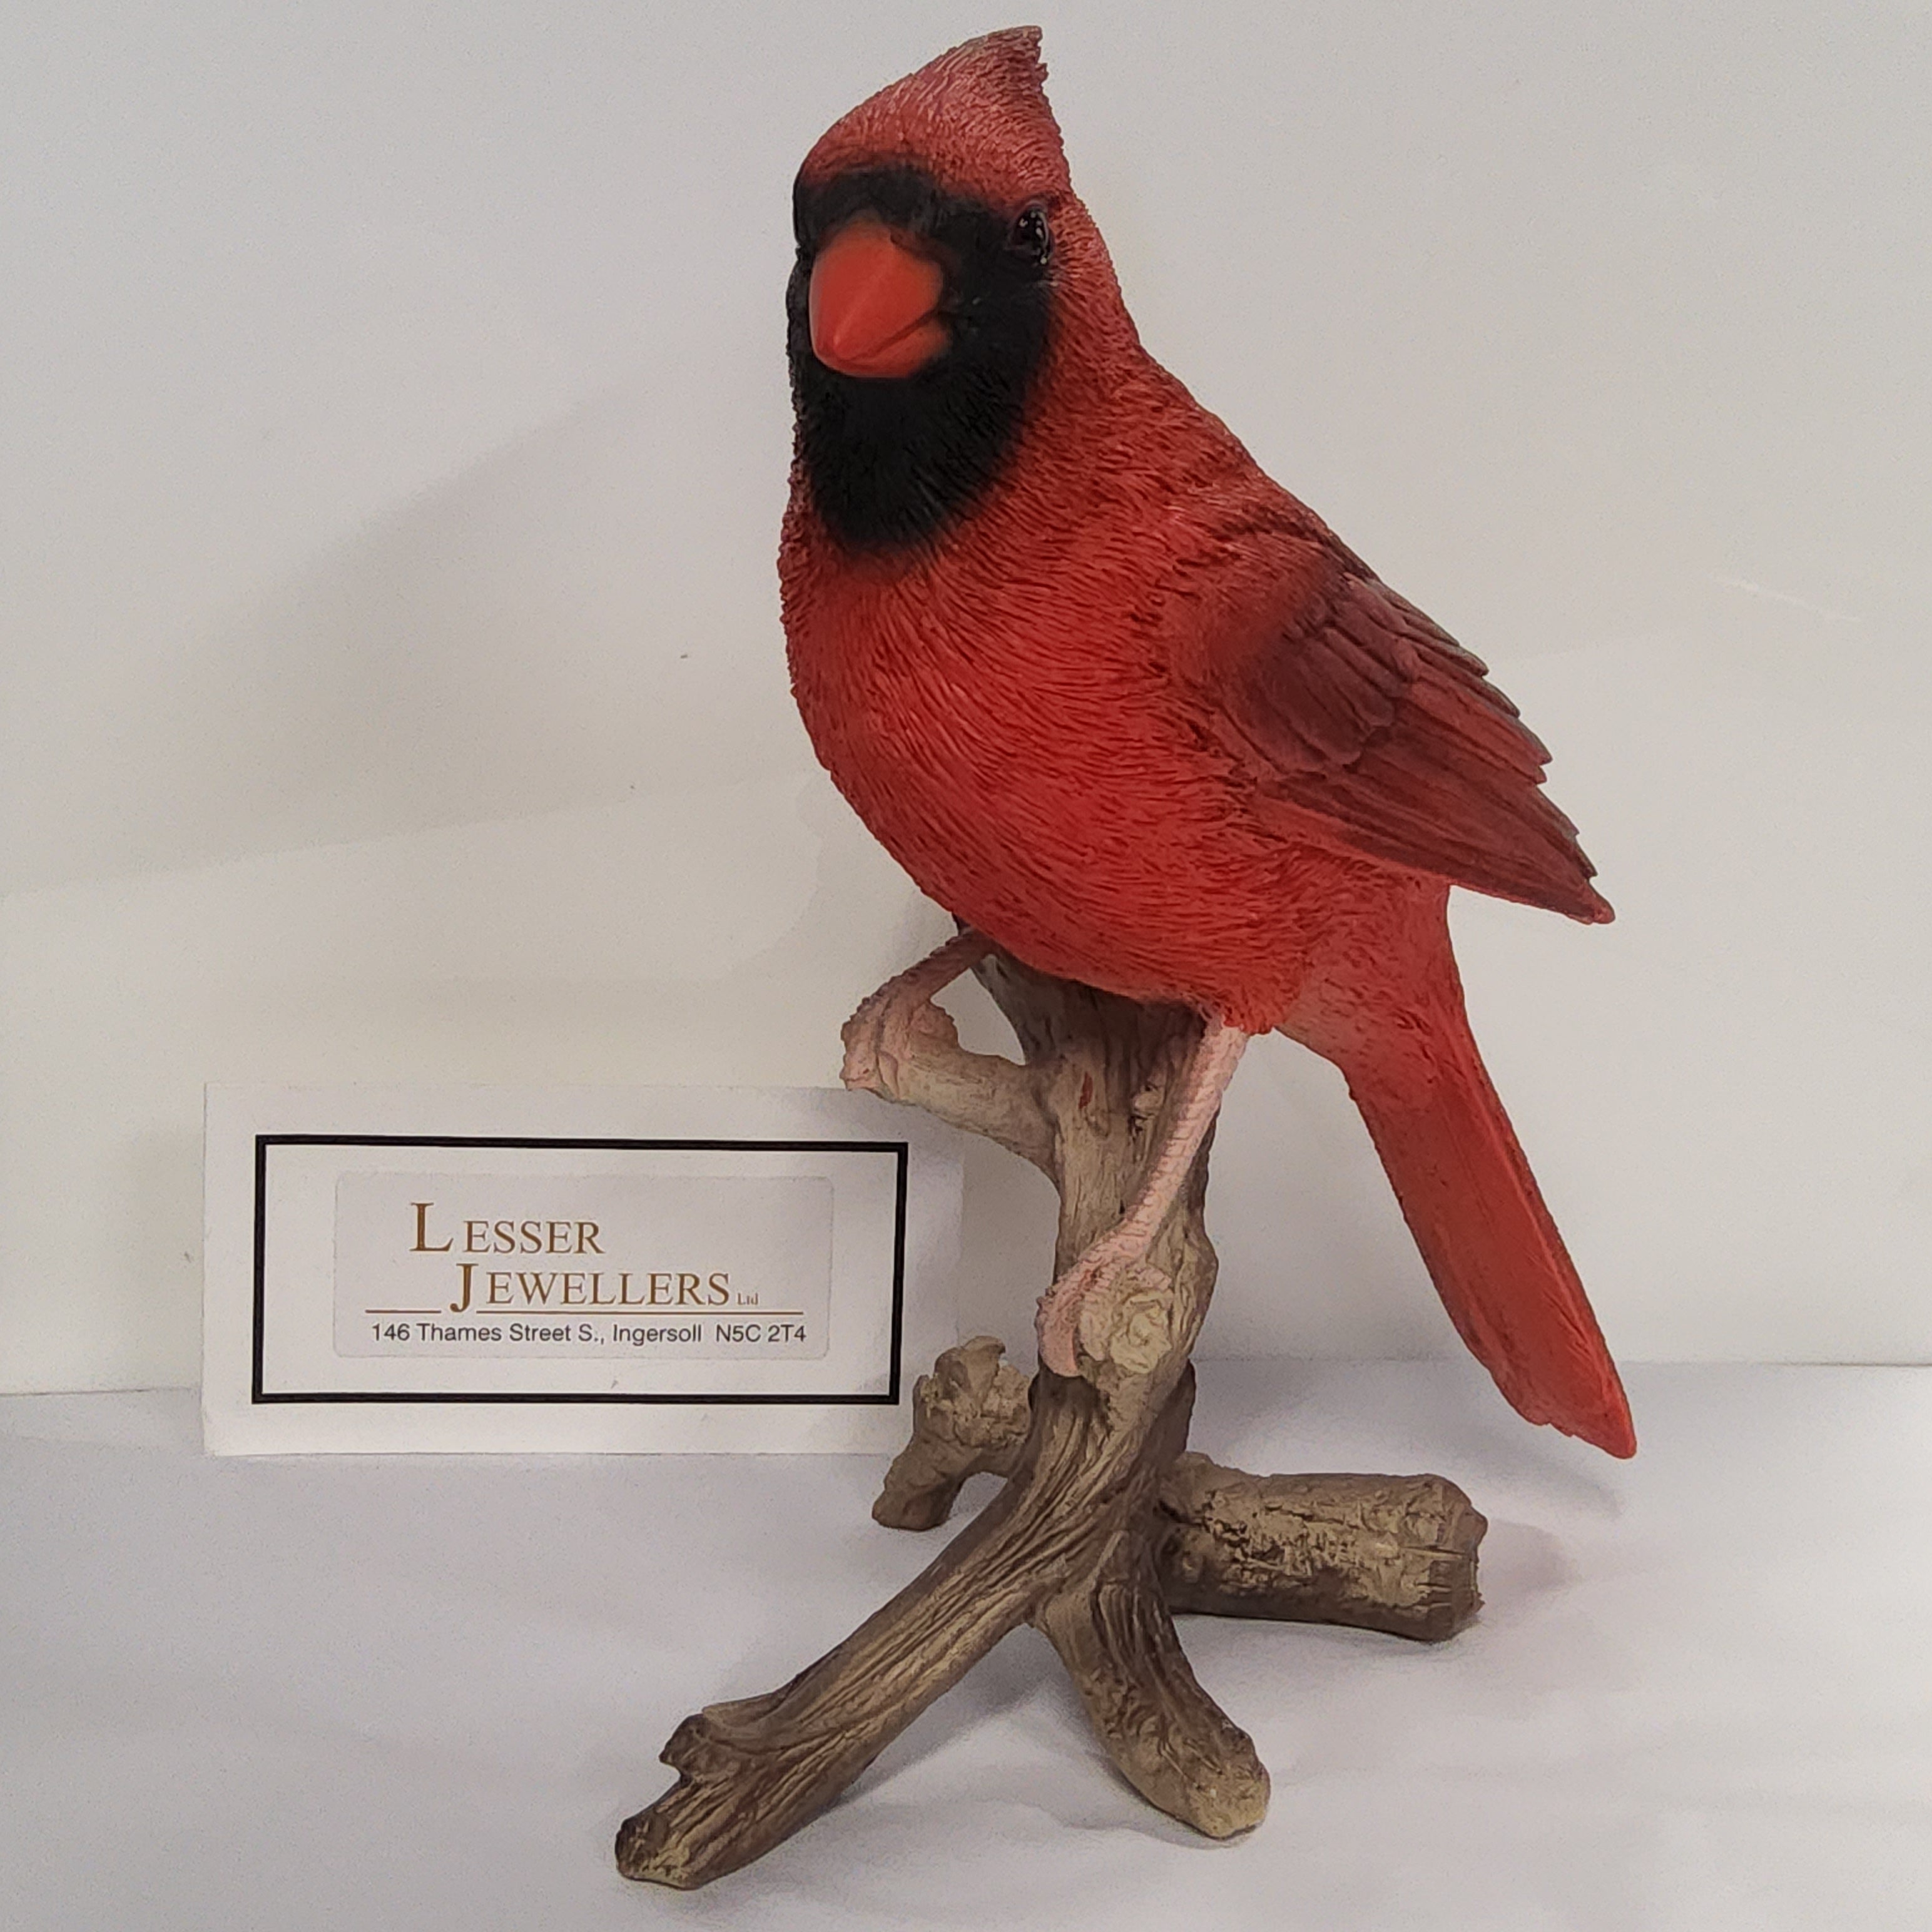 Bird Figurine - Cardinal on Branch 87758-B